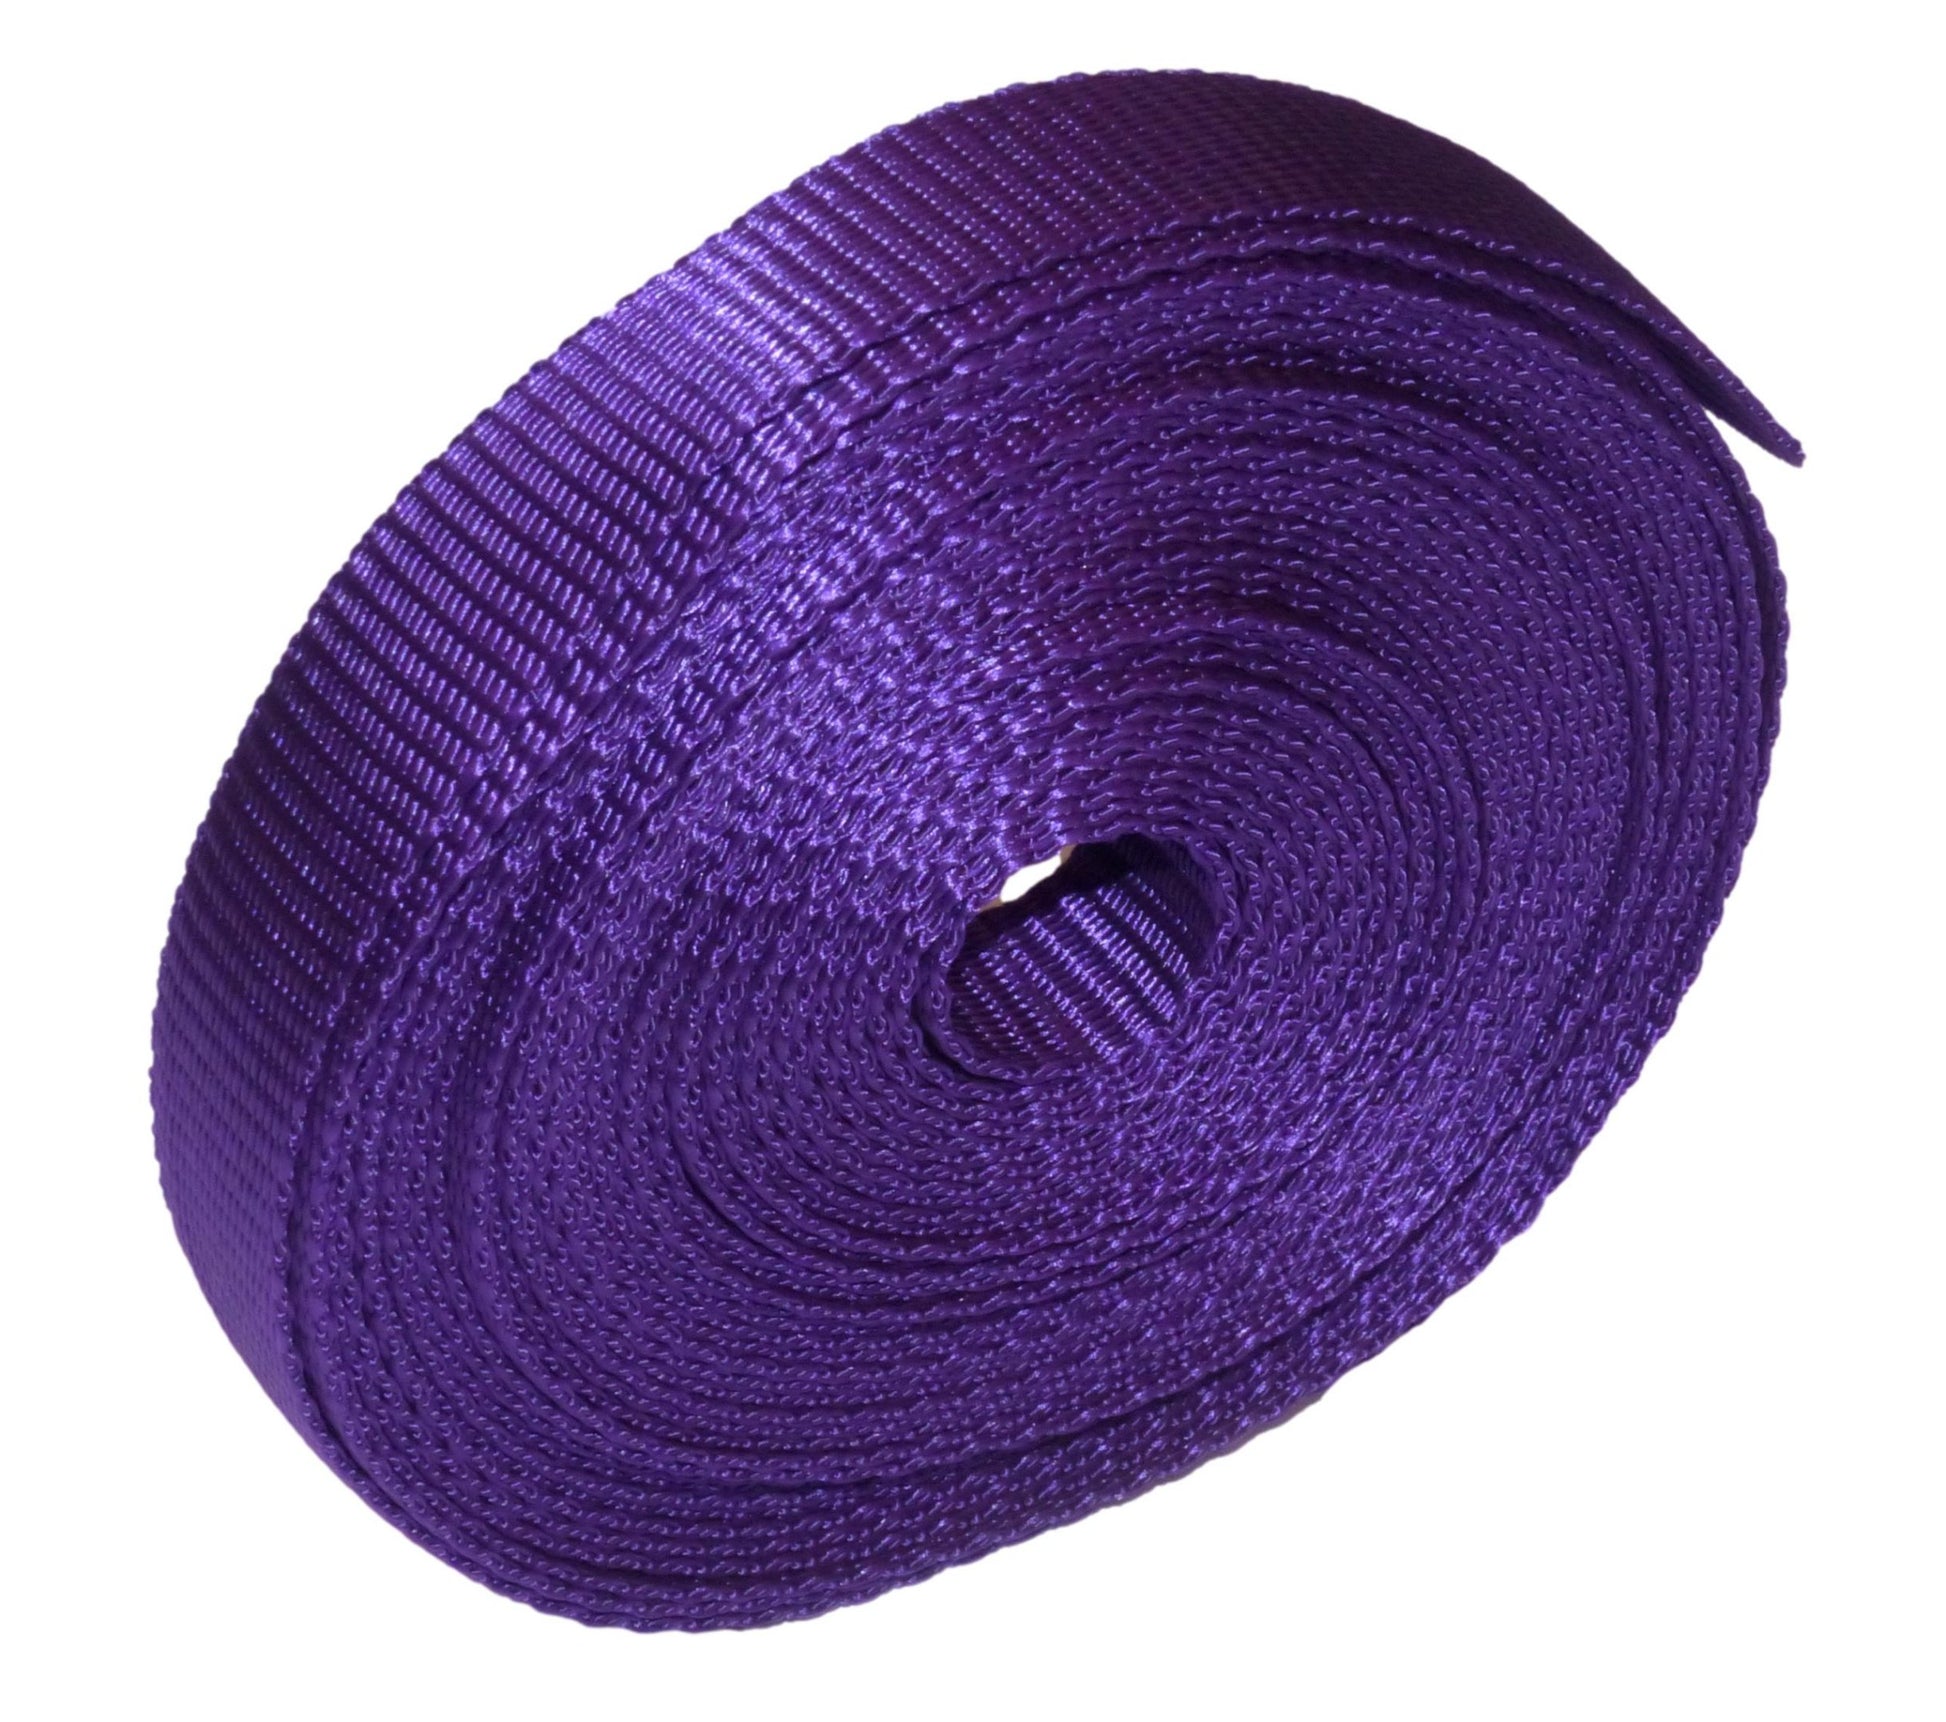 Benristraps 25mm Polypropylene Webbing, 10 metres (32') in purple